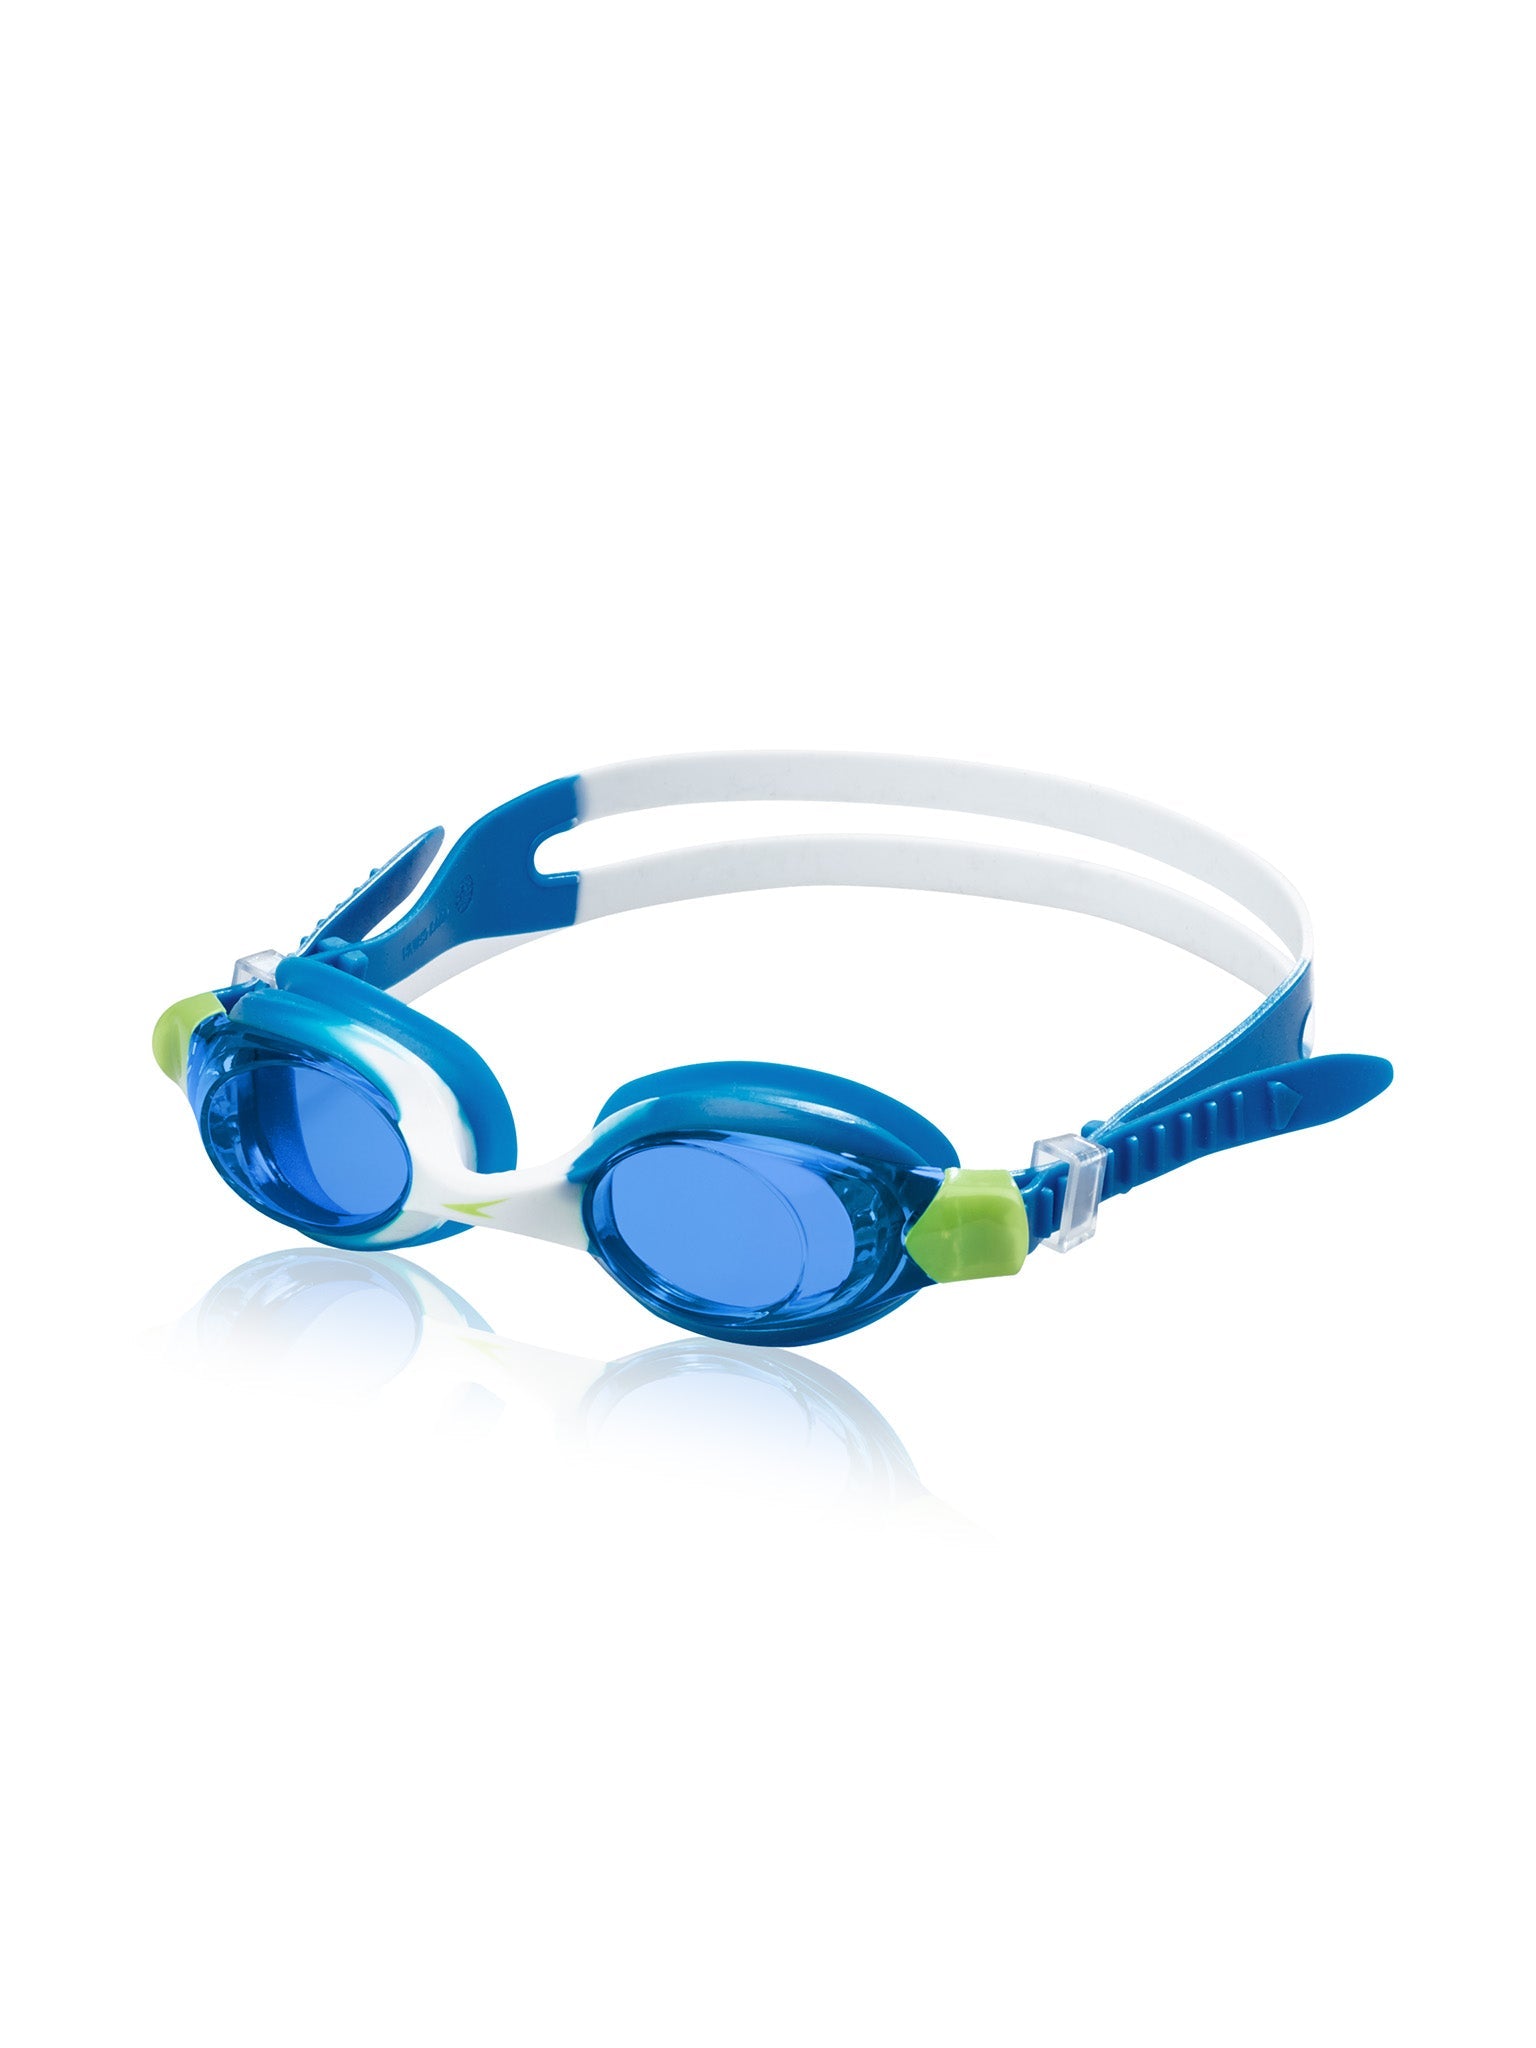 Lunettes de natation Skoogles pour enfants - Bleu/Bleu